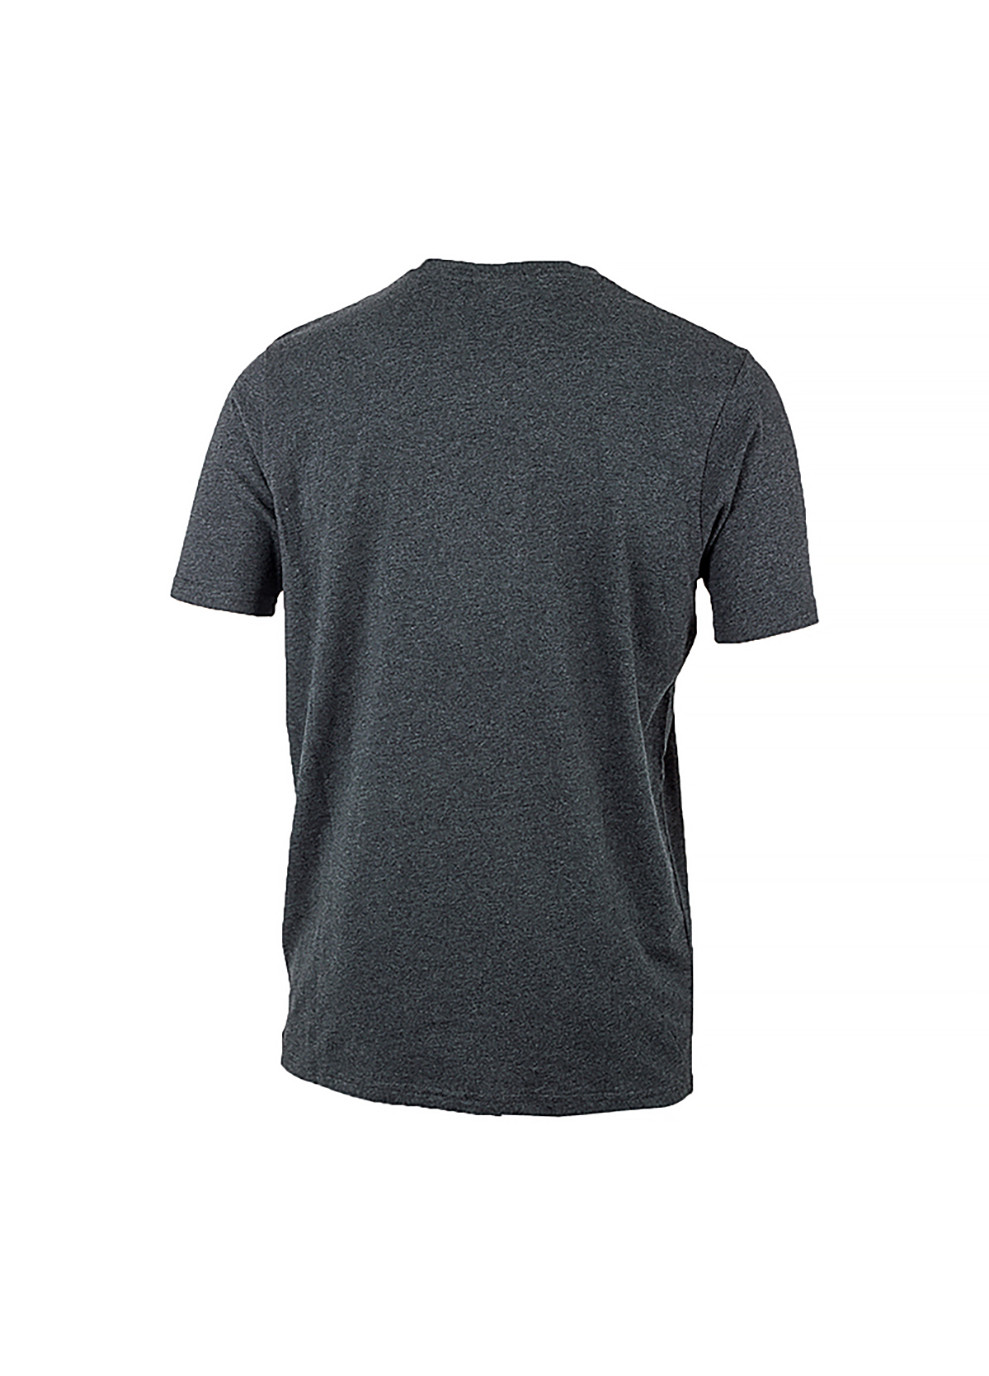 Сіра чоловіча футболка sl prado сірий xl (shc07405-dark-grey-marl xl) Ellesse